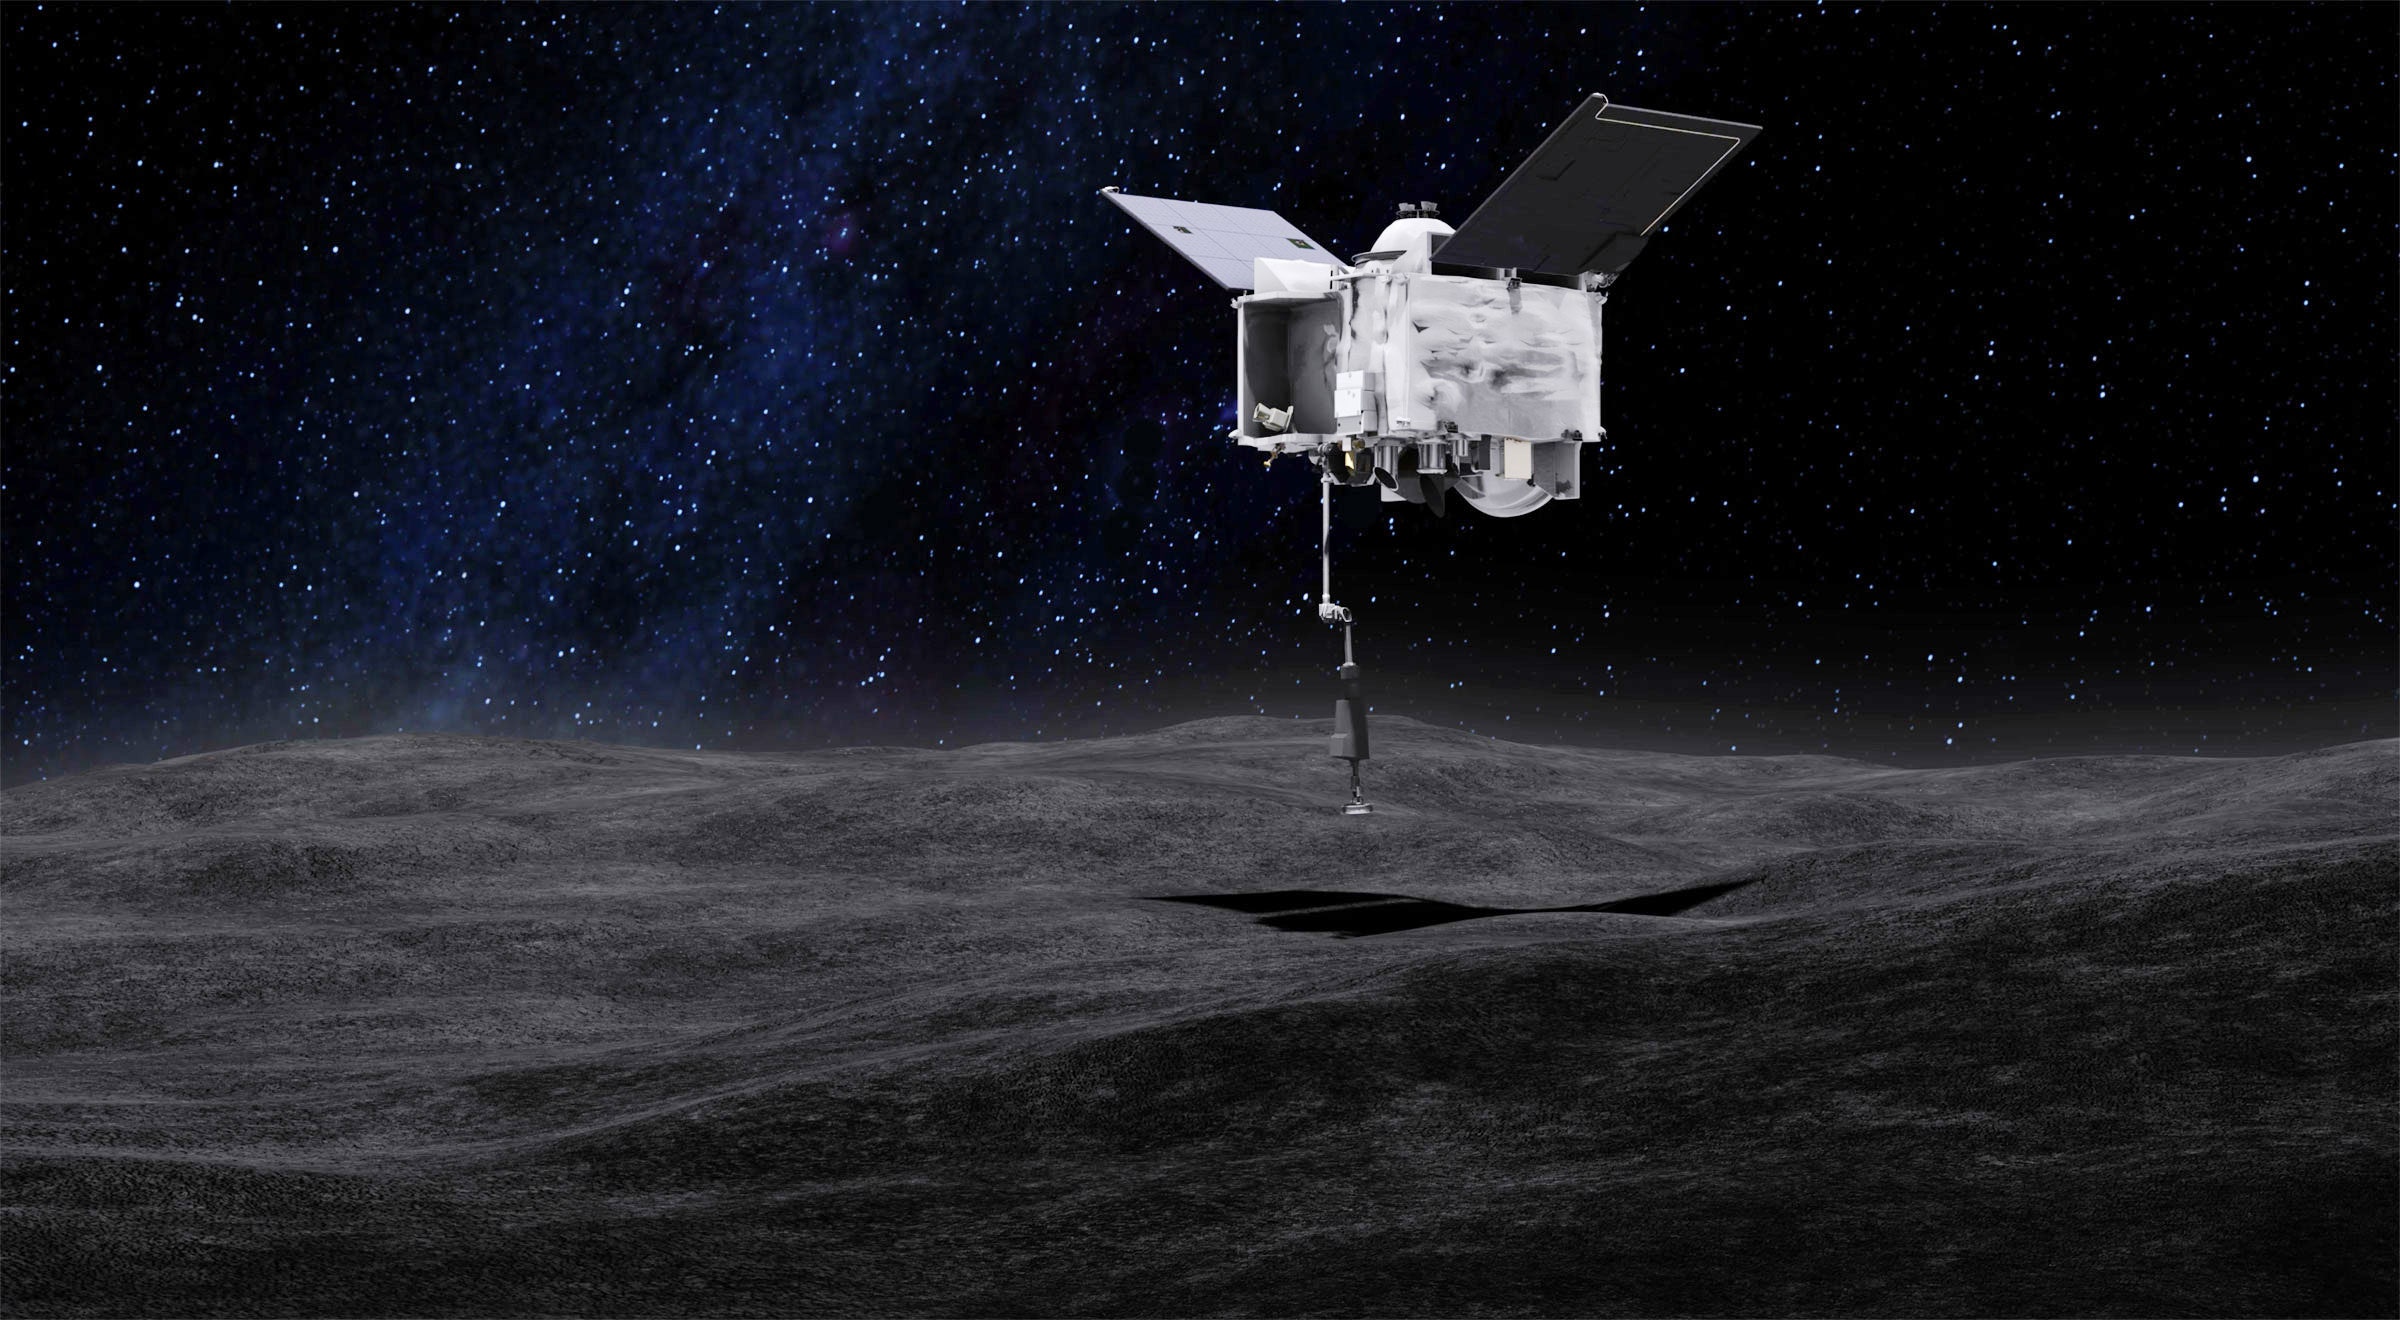 Το  OSIRIS-REx μας φέρνει δείγματα από αστεροειδή 321 εκατομμύρια χιλιόμετρα μακριά από τον πλανήτη μας